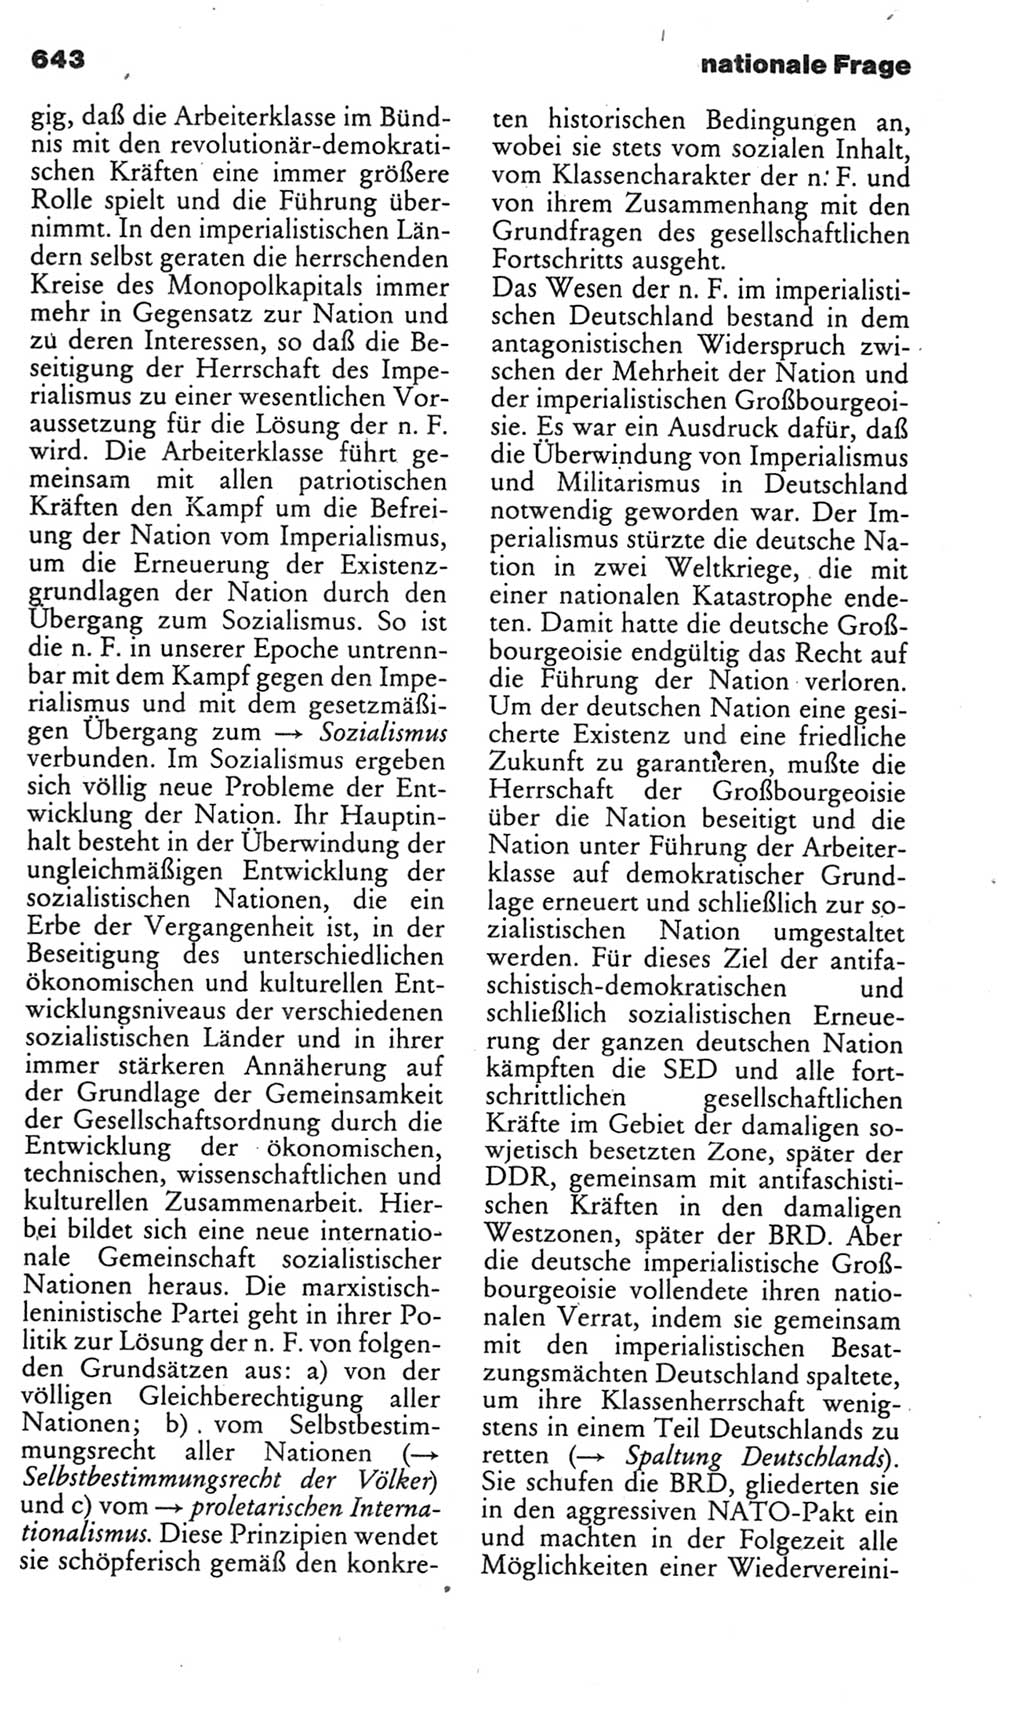 Kleines politisches Wörterbuch [Deutsche Demokratische Republik (DDR)] 1985, Seite 643 (Kl. pol. Wb. DDR 1985, S. 643)